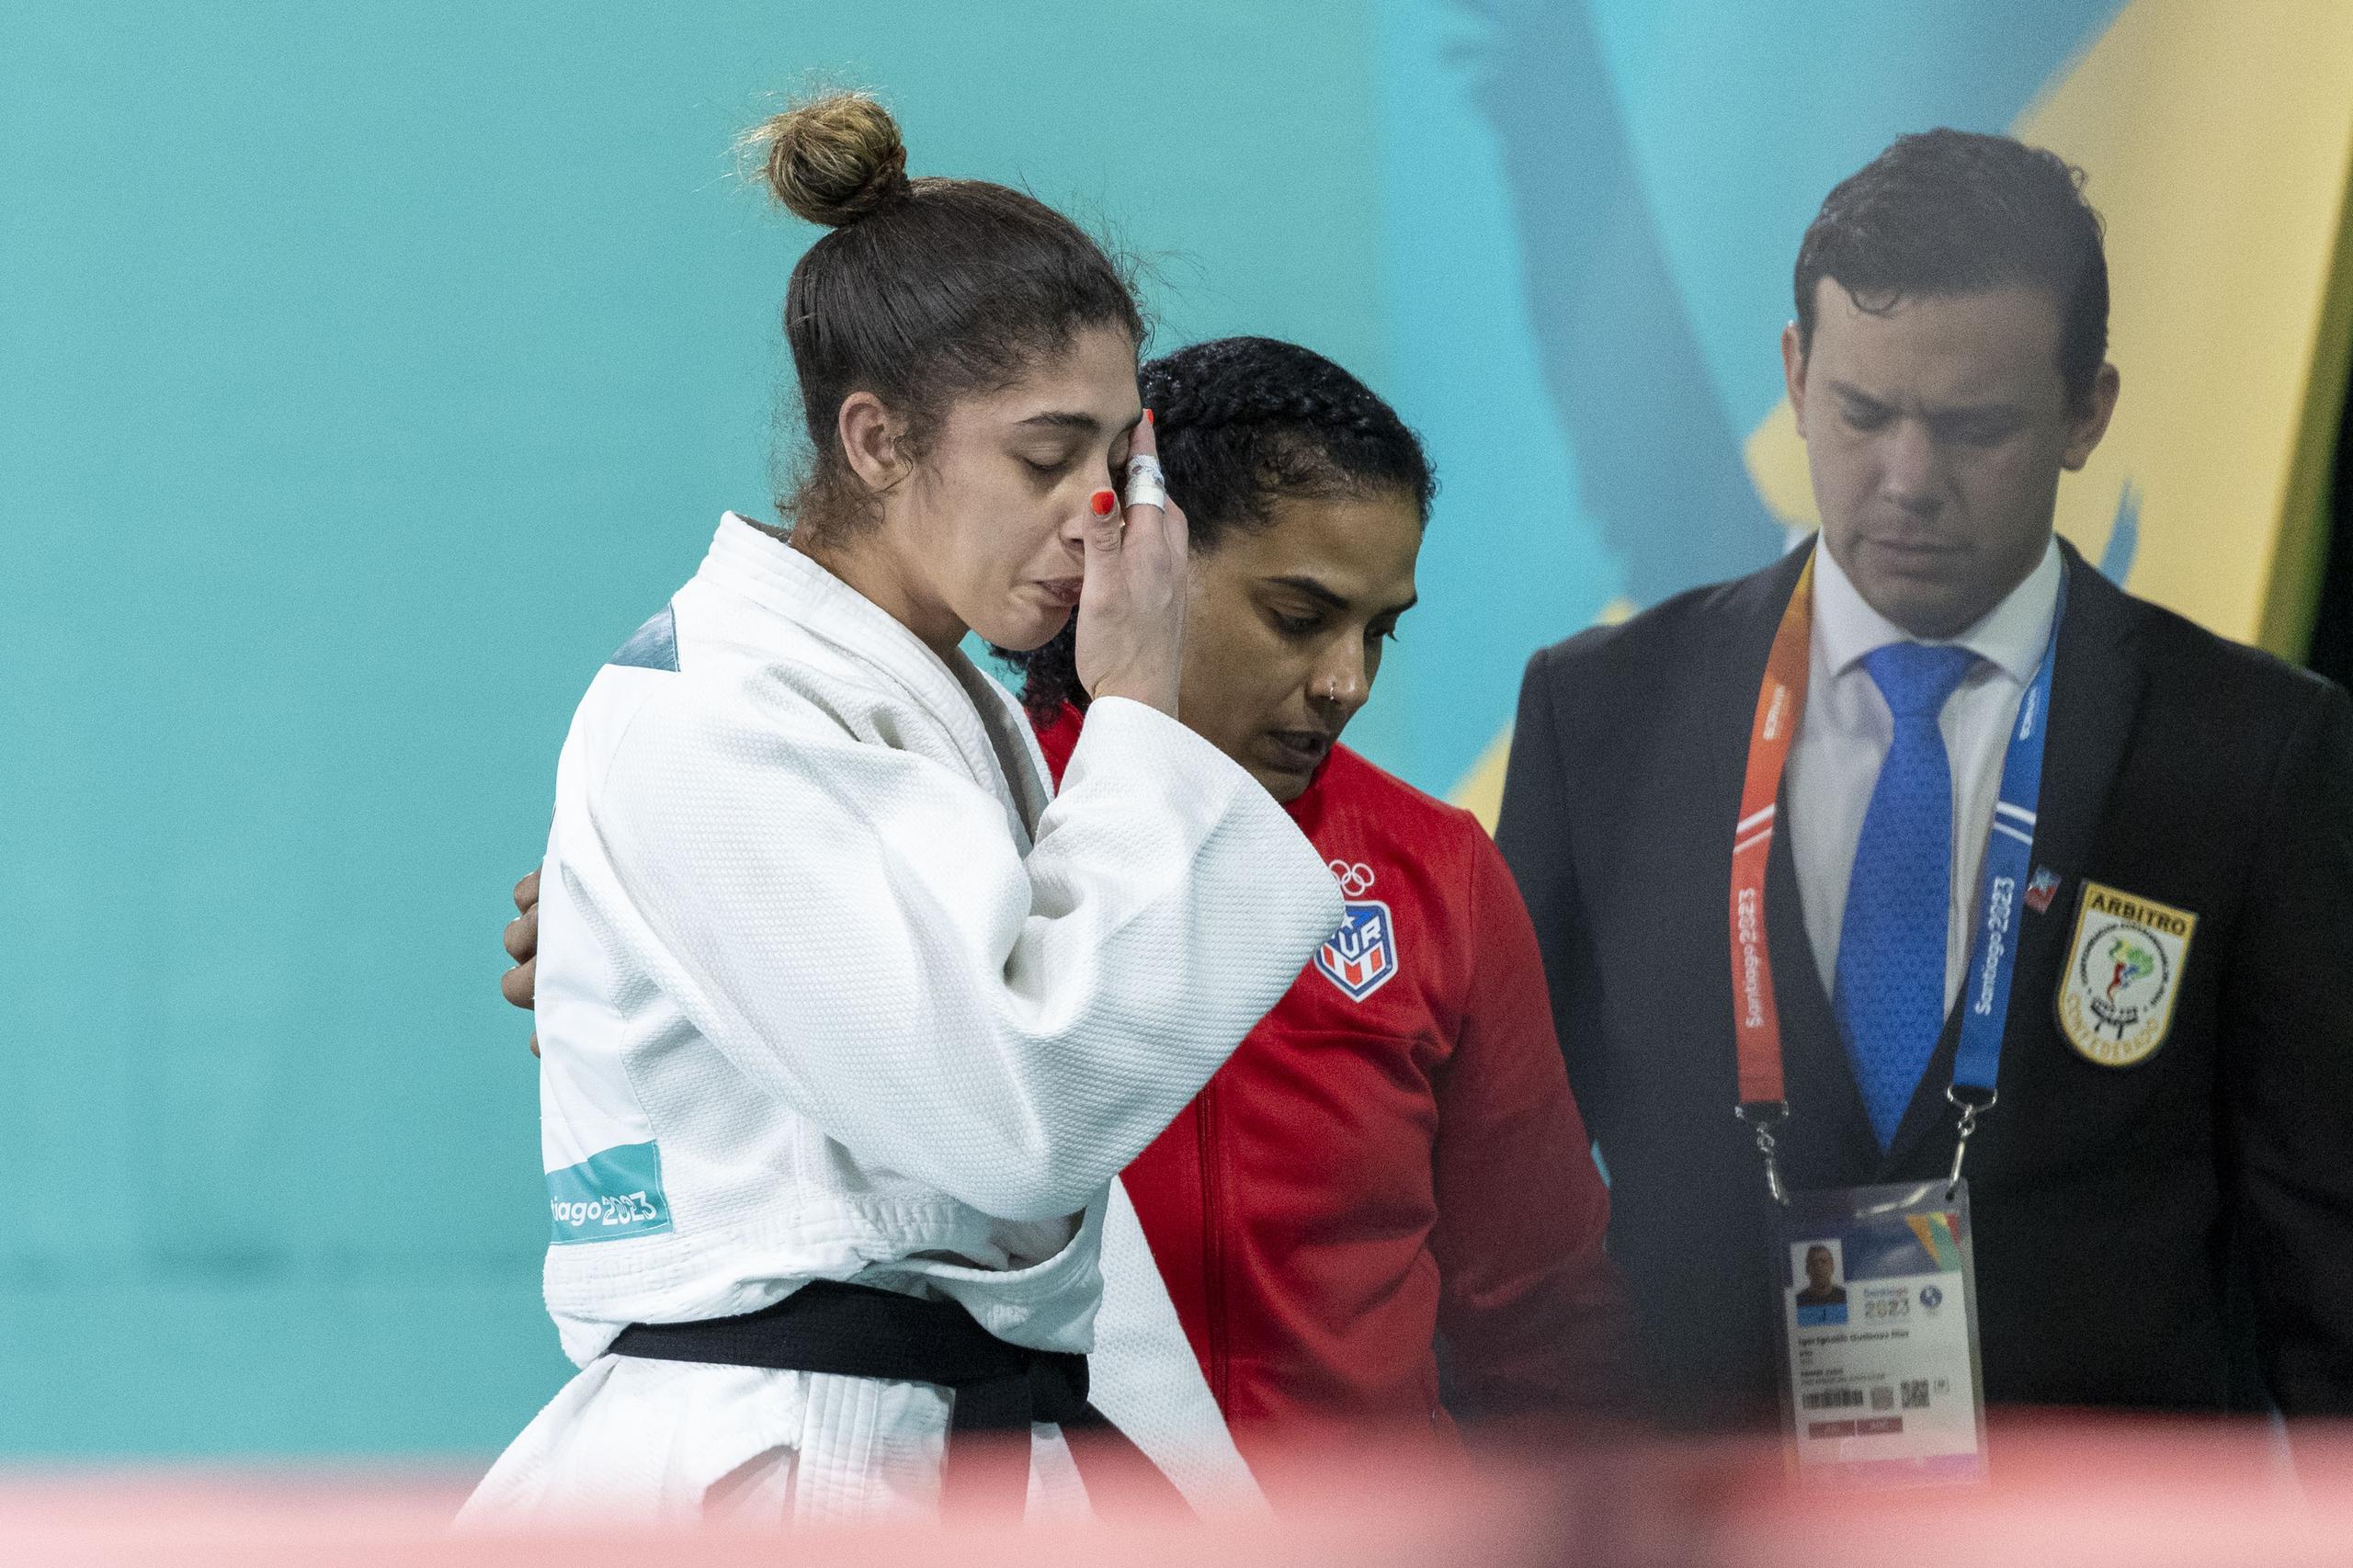 Jessica García, con uniforme rojo, aparece aquí consolando a Sairy Colón al terminar su combate esta tarde, en el que disputó la medalla de oro pero se quedó con la plata.